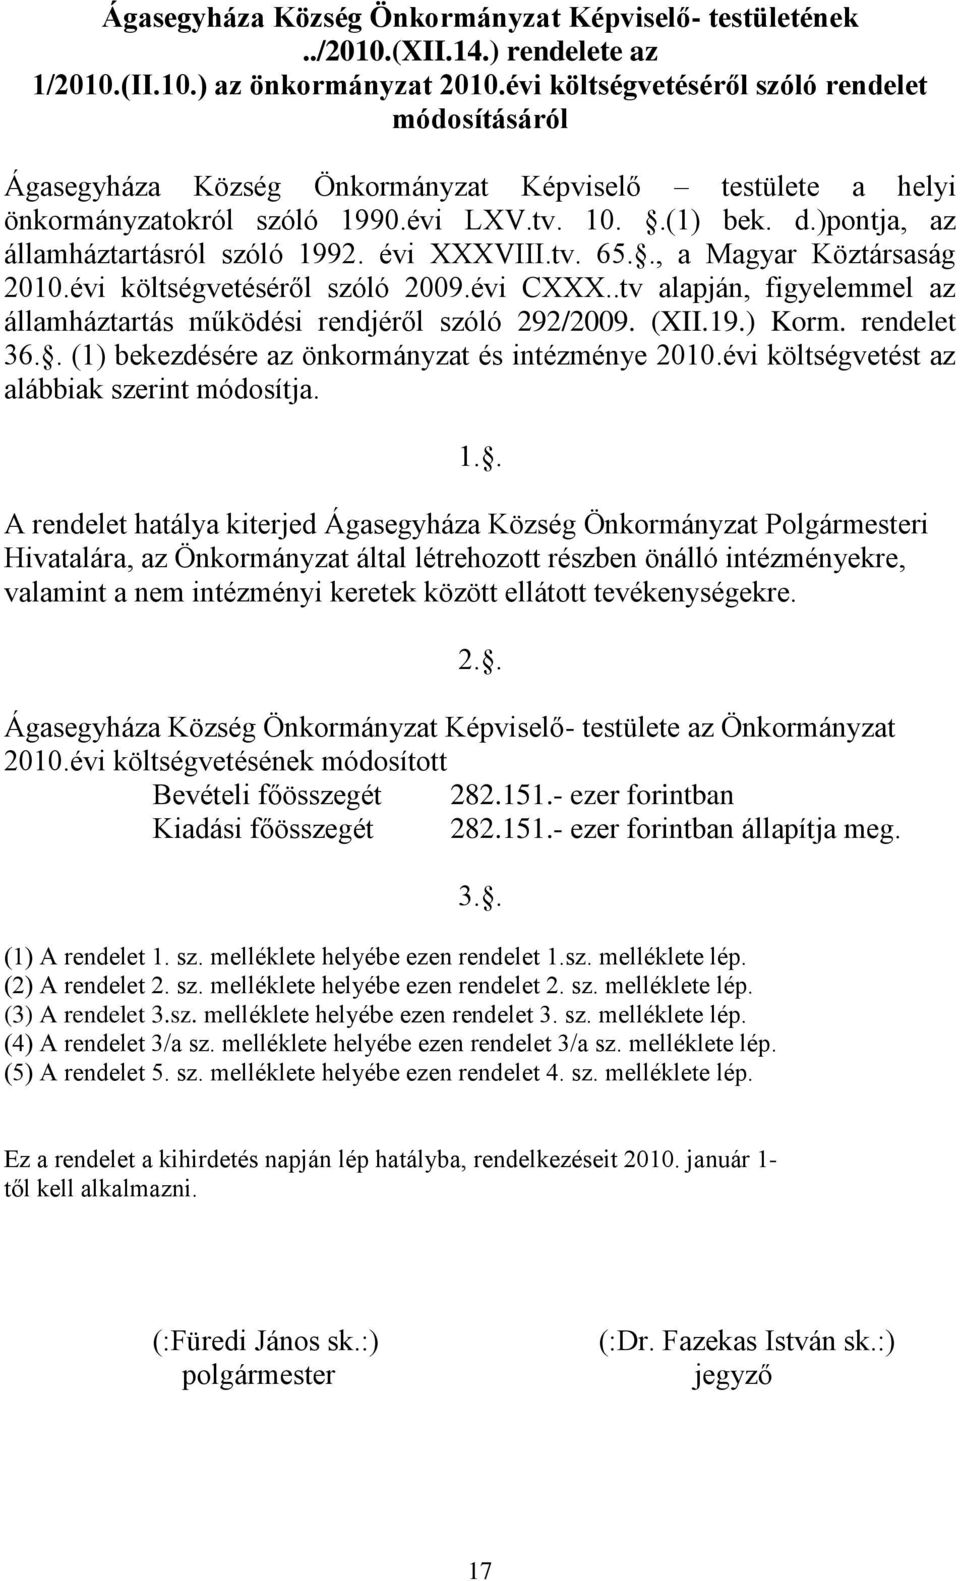 )pontja, az államháztartásról szóló 1992. évi XXXVIII.tv. 65.., a Magyar Köztársaság 2010.évi költségvetéséről szóló 2009.évi CXXX.